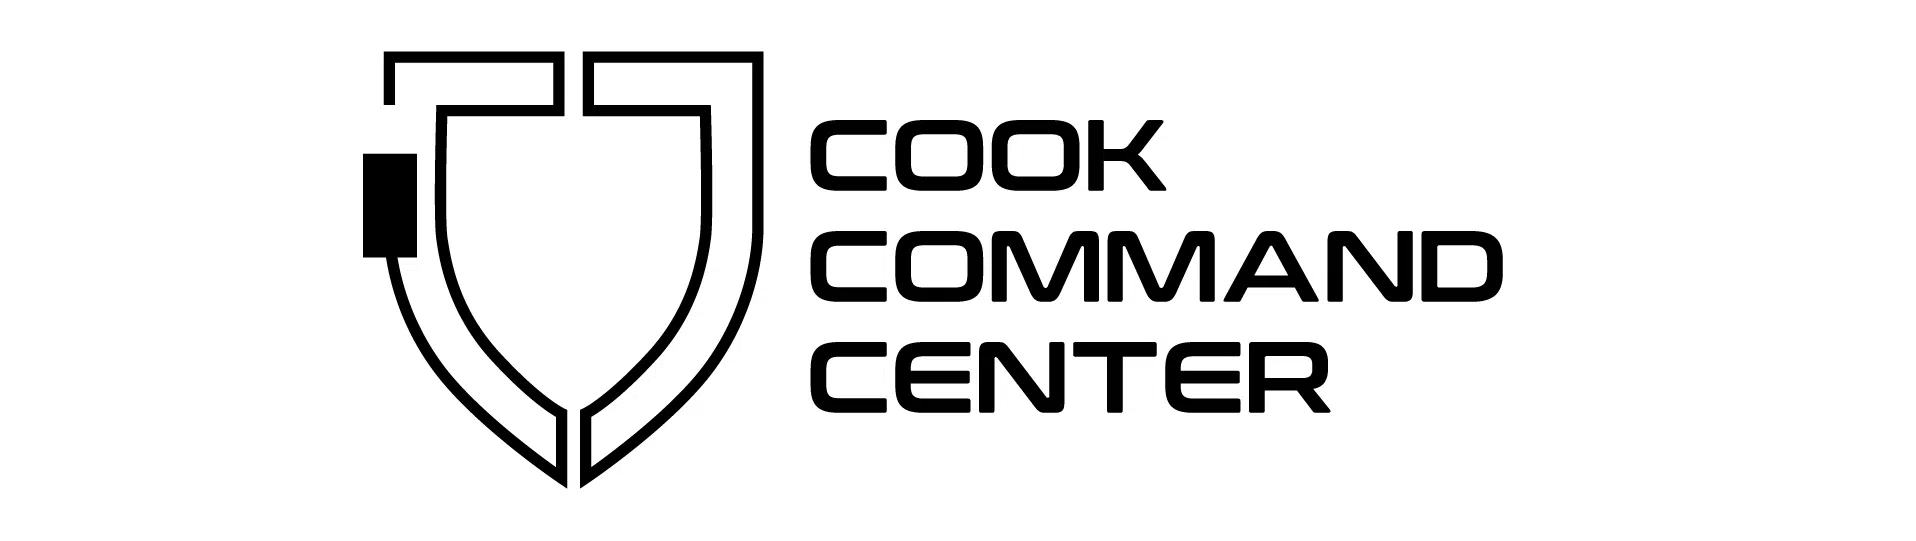 Ccc Logos 02